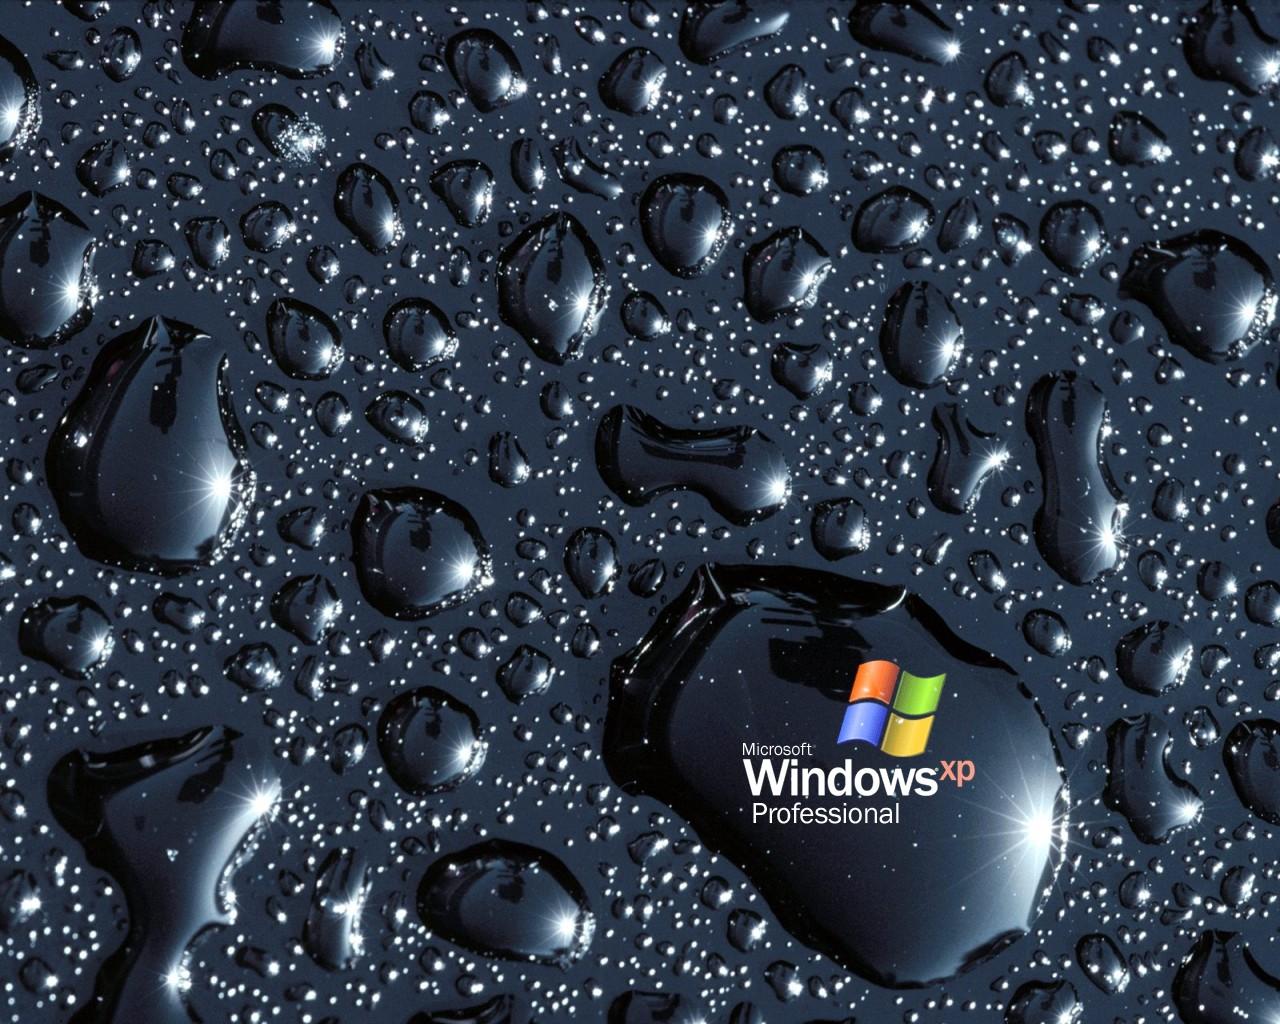 Bạn thích những hình nền đẹp trên máy tính? Hãy thử ngay ứng dụng Microsoft để được tận hưởng trọn vẹn những bức ảnh tuyệt đẹp của Microsoft. Từ những bức ảnh tuyệt đẹp về thiên nhiên cho đến những thiết kế độc đáo, đây là sản phẩm mà bạn không thể bỏ qua.